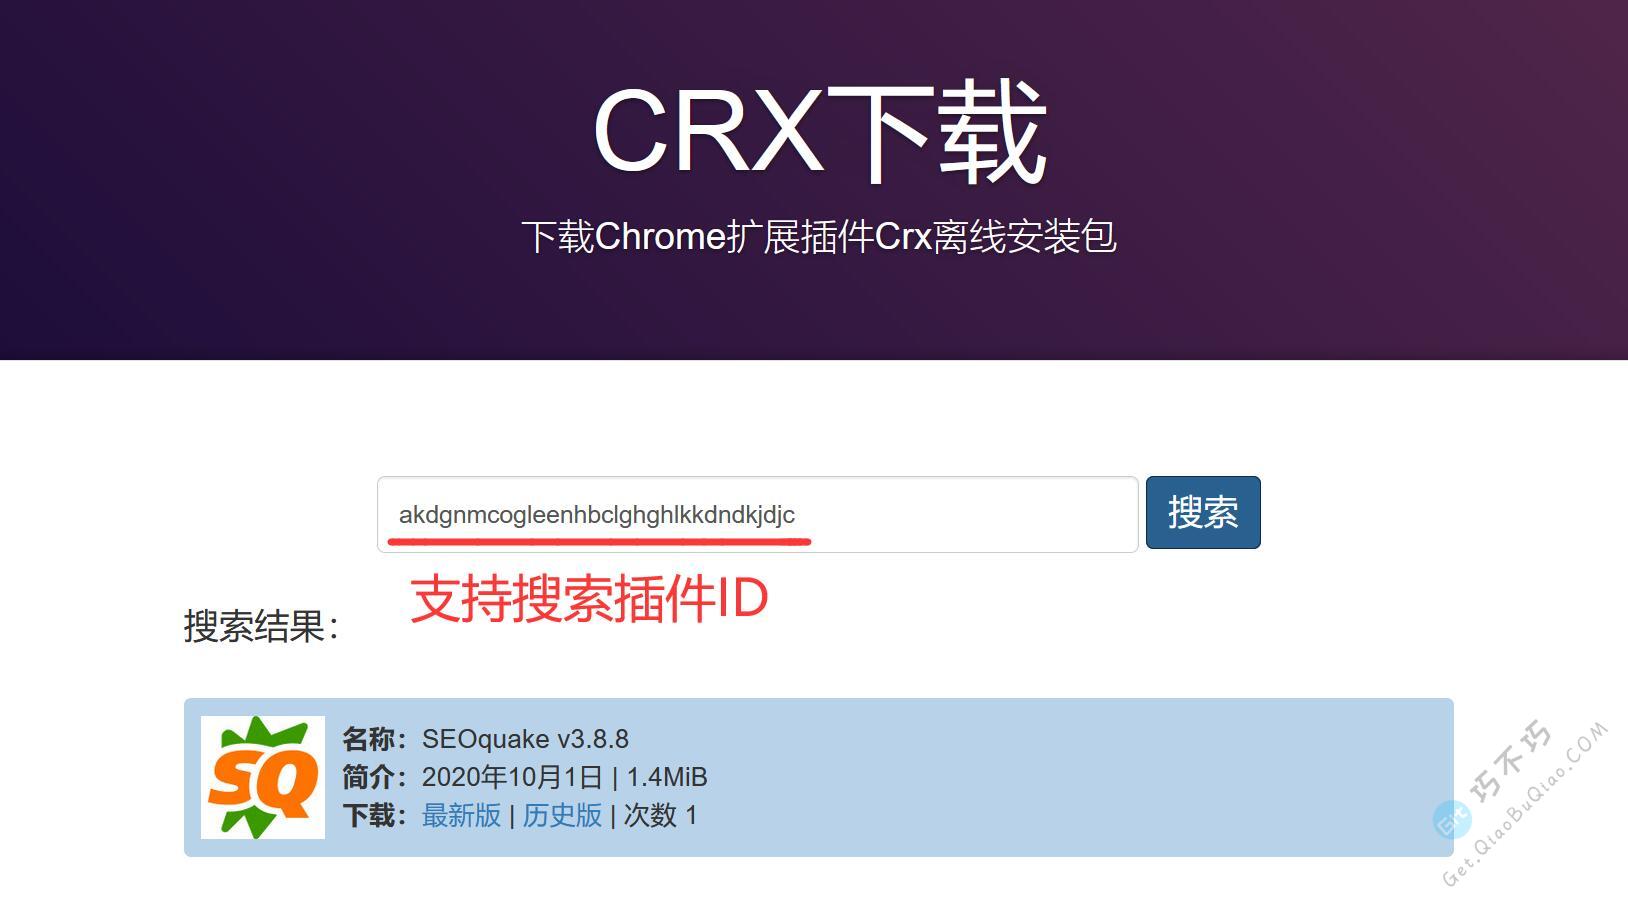 一文详尽目前最好的Chrome浏览器CRX插件国内下载方式